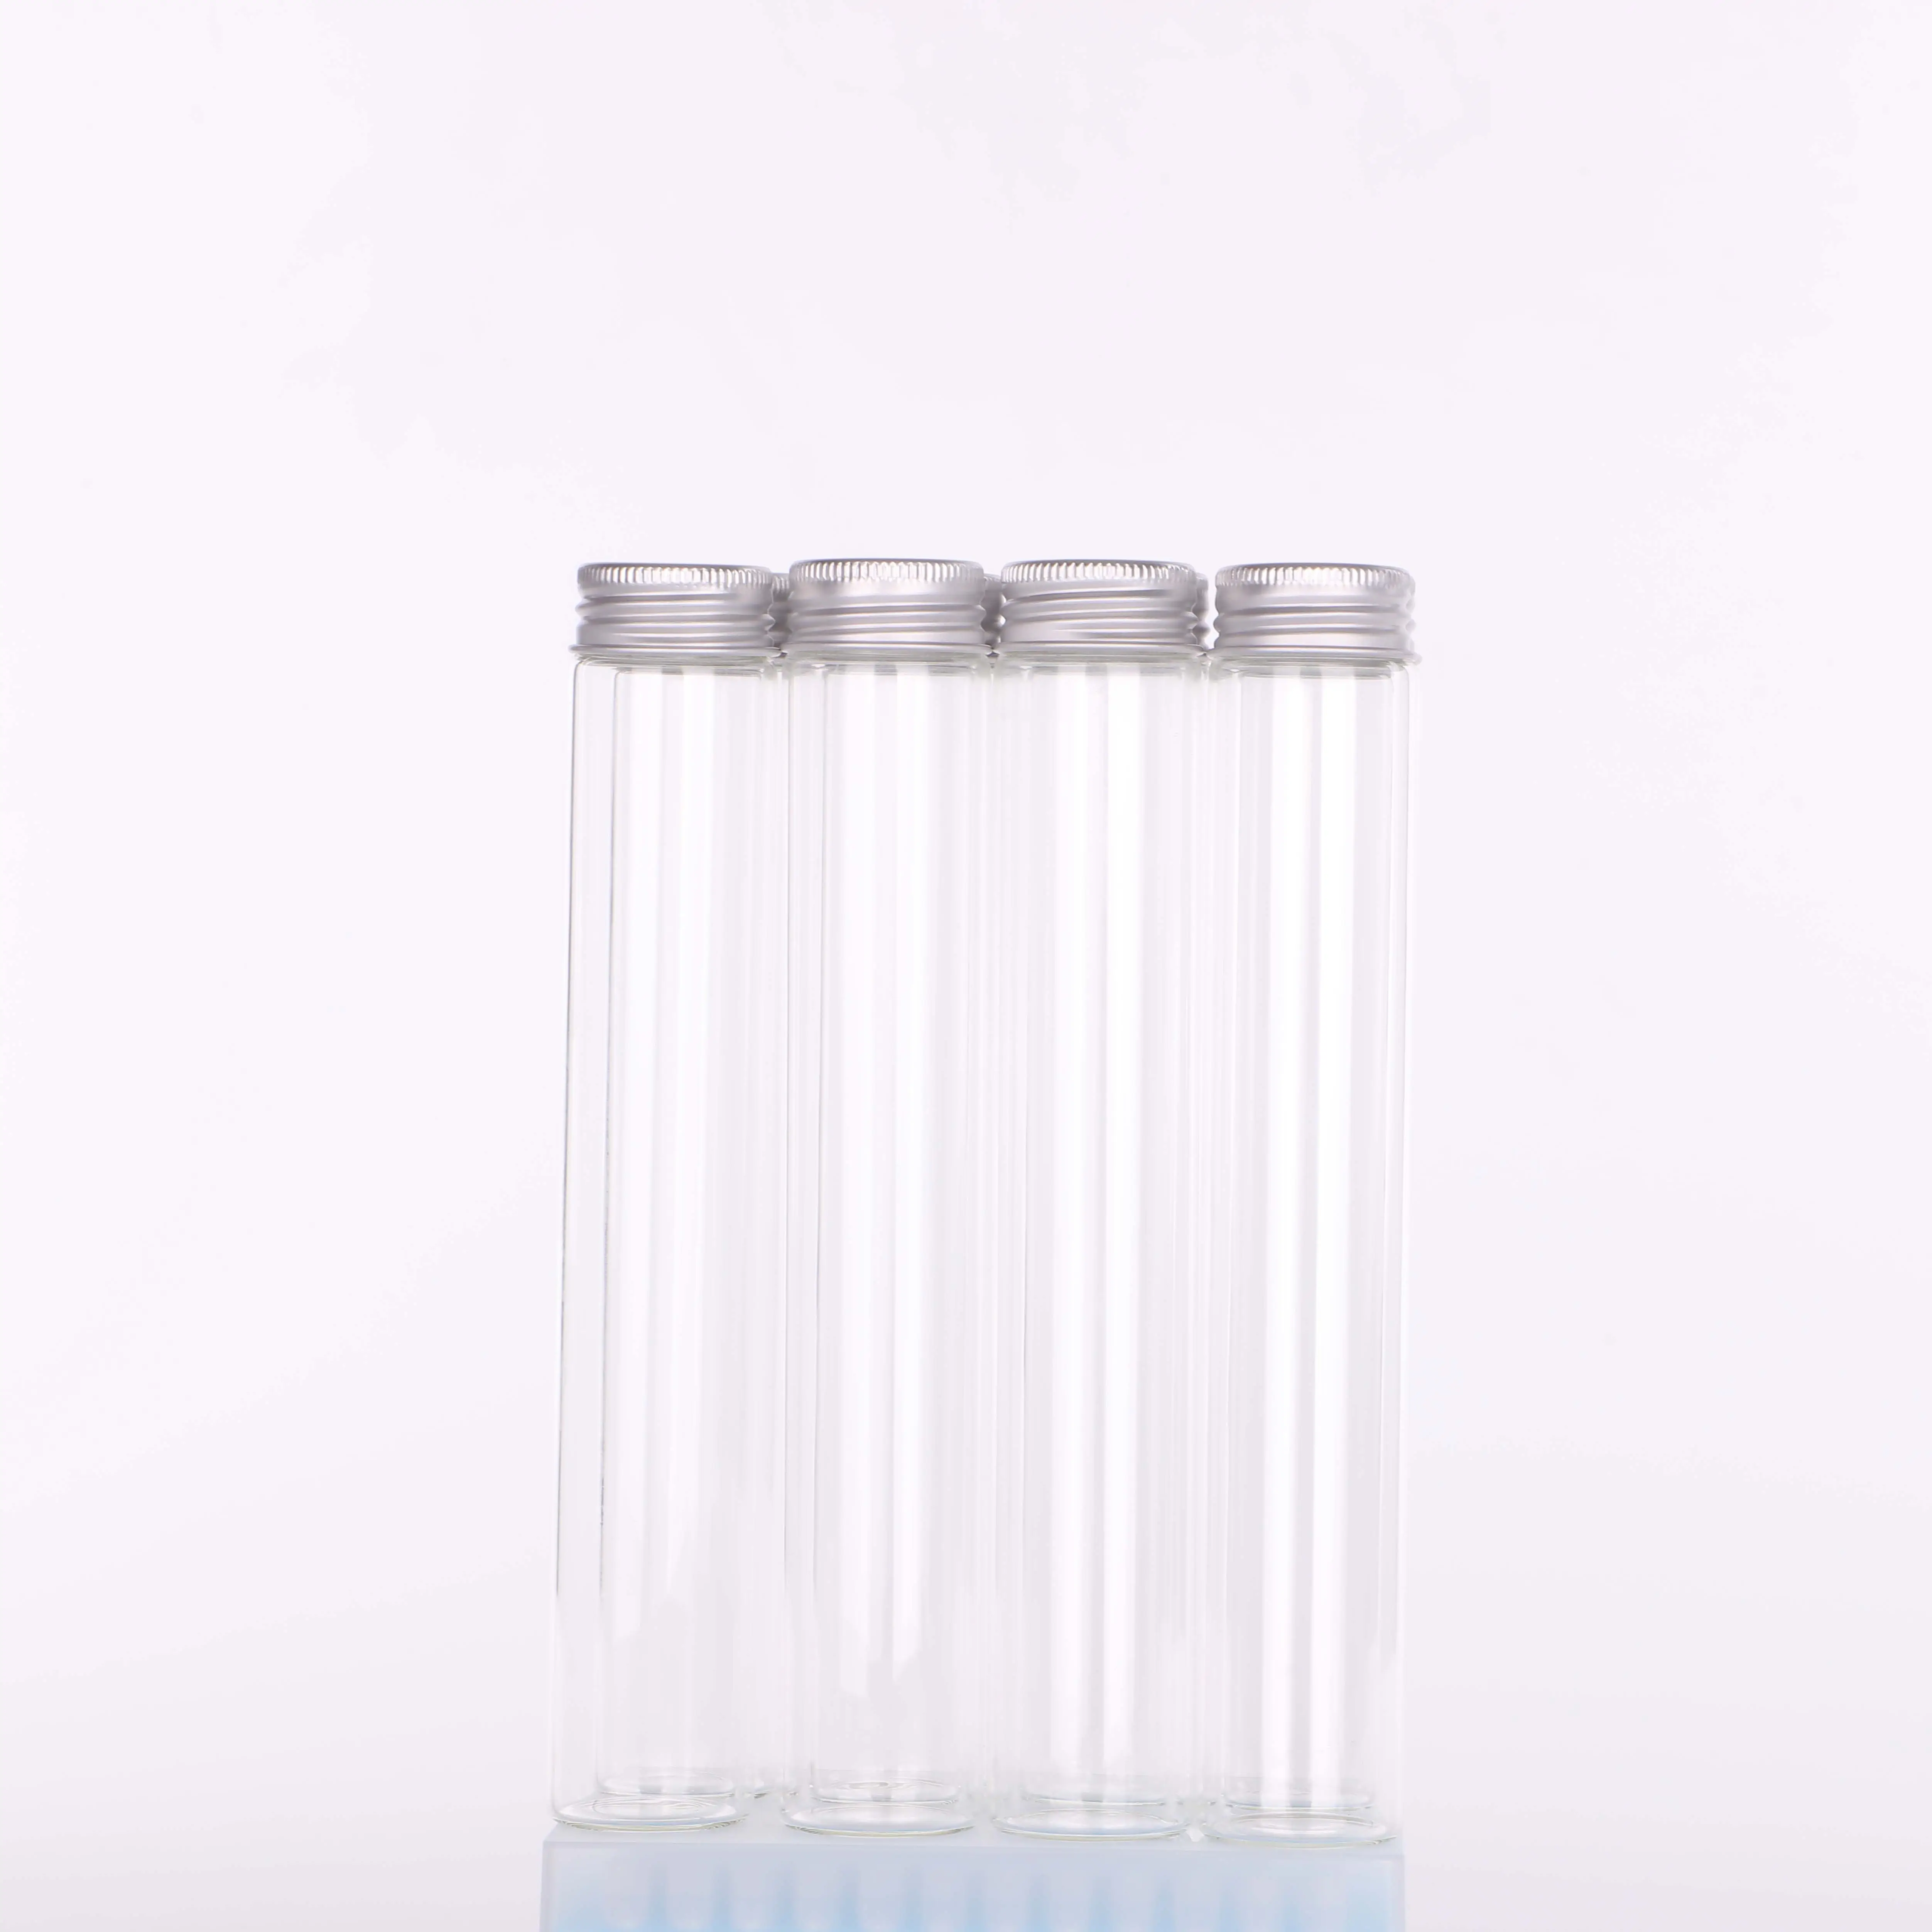 Tubo de ensayo de vidrio de diferentes tamaños, tapón de corcho, preenrollable, venta al por mayor, gran oferta